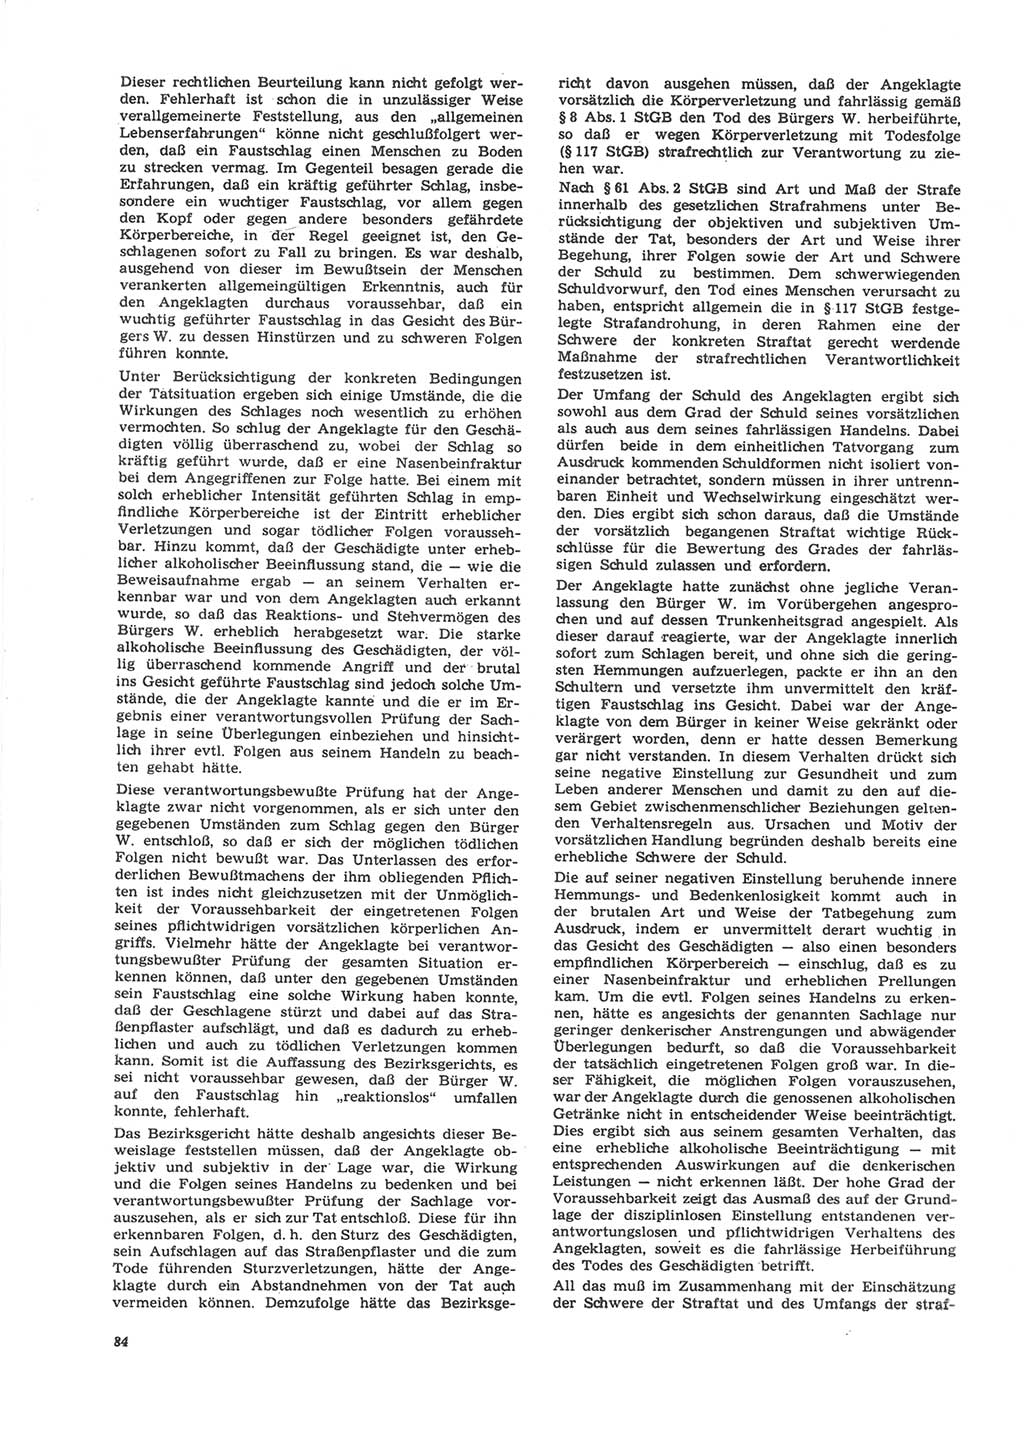 Neue Justiz (NJ), Zeitschrift für Recht und Rechtswissenschaft [Deutsche Demokratische Republik (DDR)], 24. Jahrgang 1970, Seite 84 (NJ DDR 1970, S. 84)